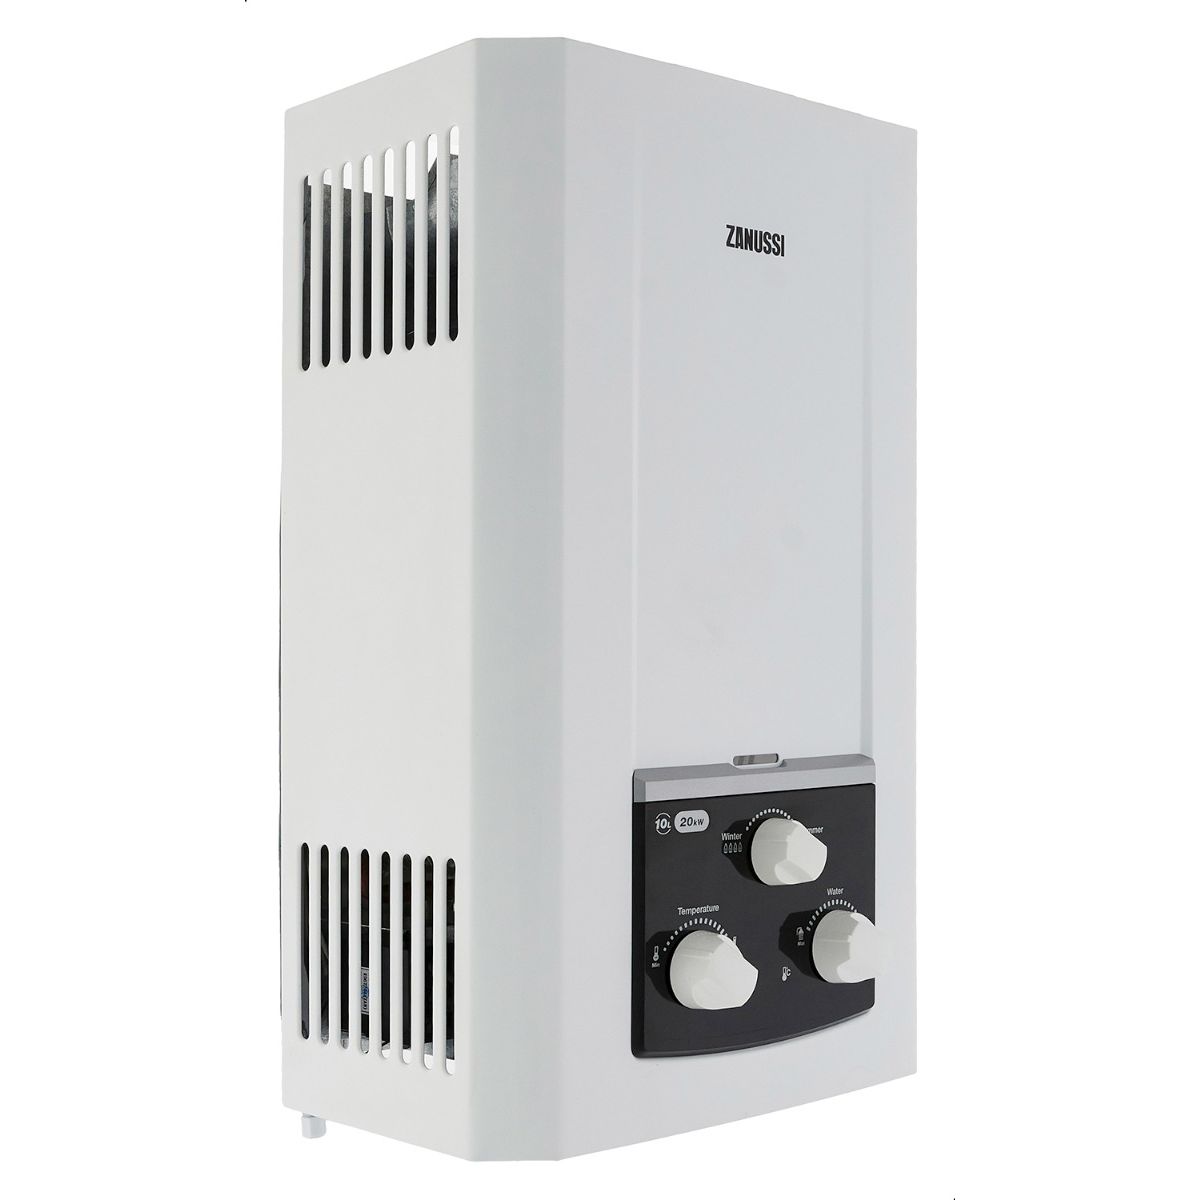 Zanussi Delta Gas Water Heater,10 Litre , White - 945105569